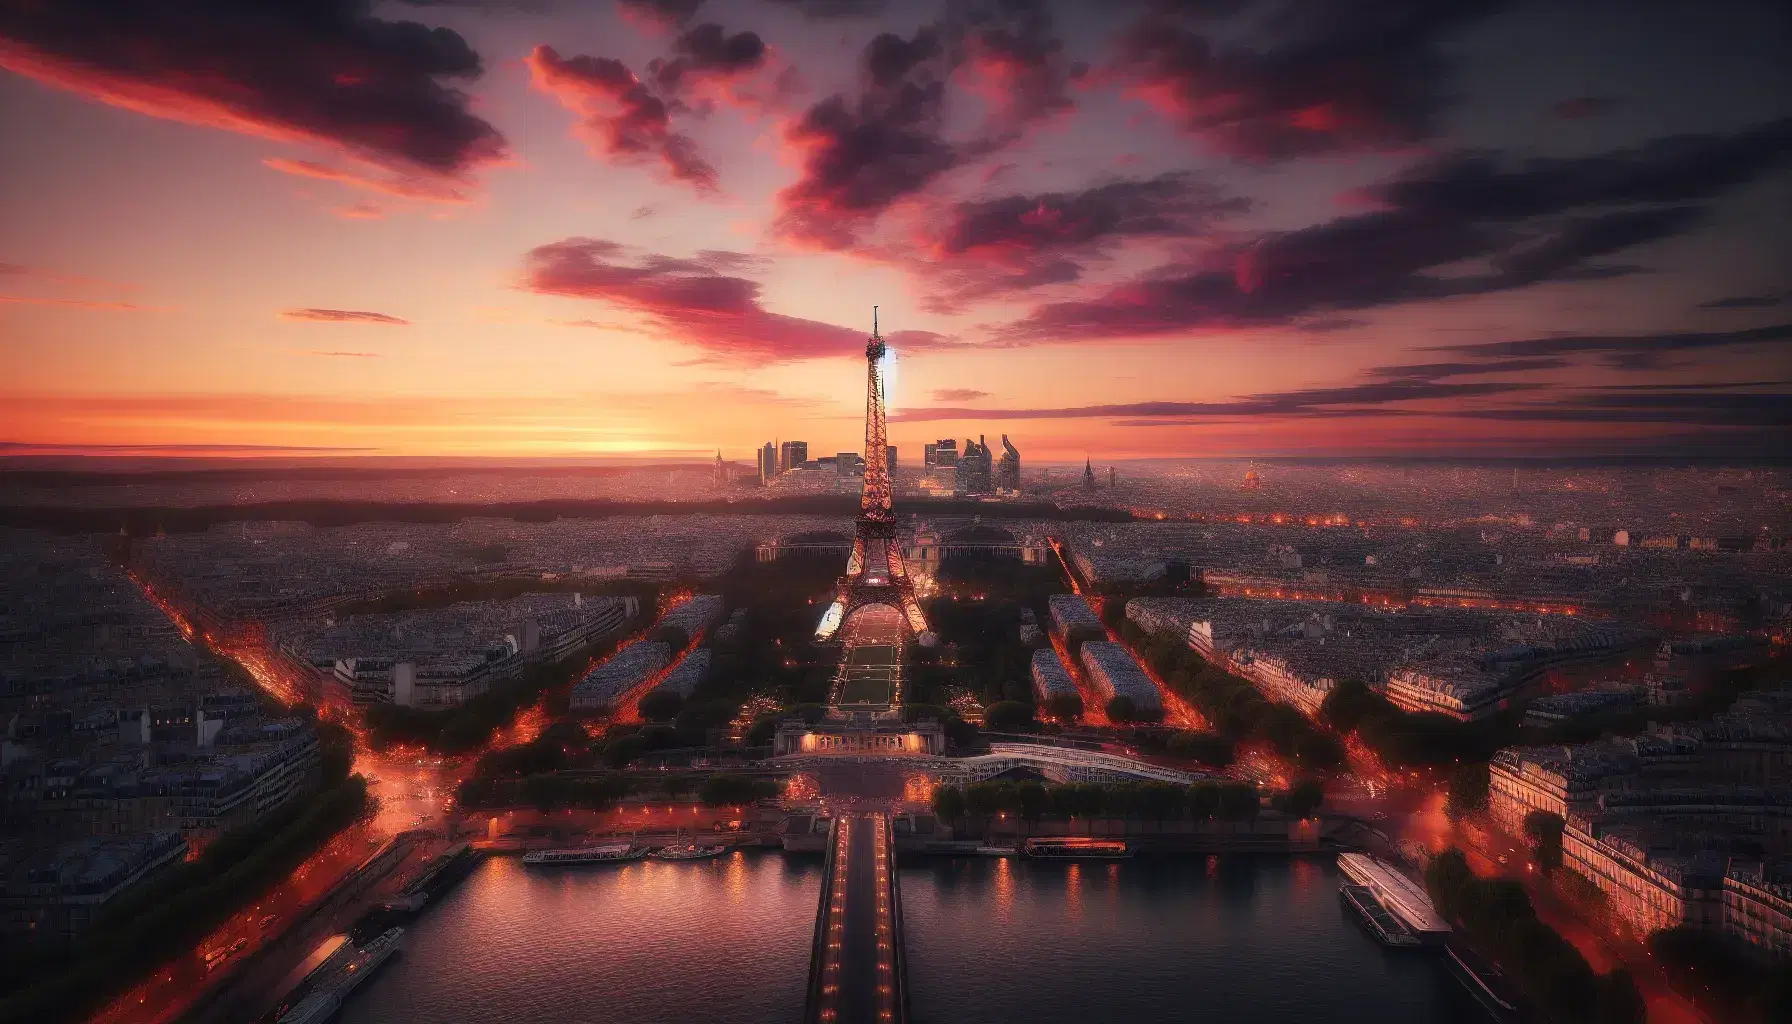 Vista panoramica di Parigi al tramonto con la Torre Eiffel illuminata, cielo sfumato rosa-arancio e riflessi dorati sul fiume Senna.